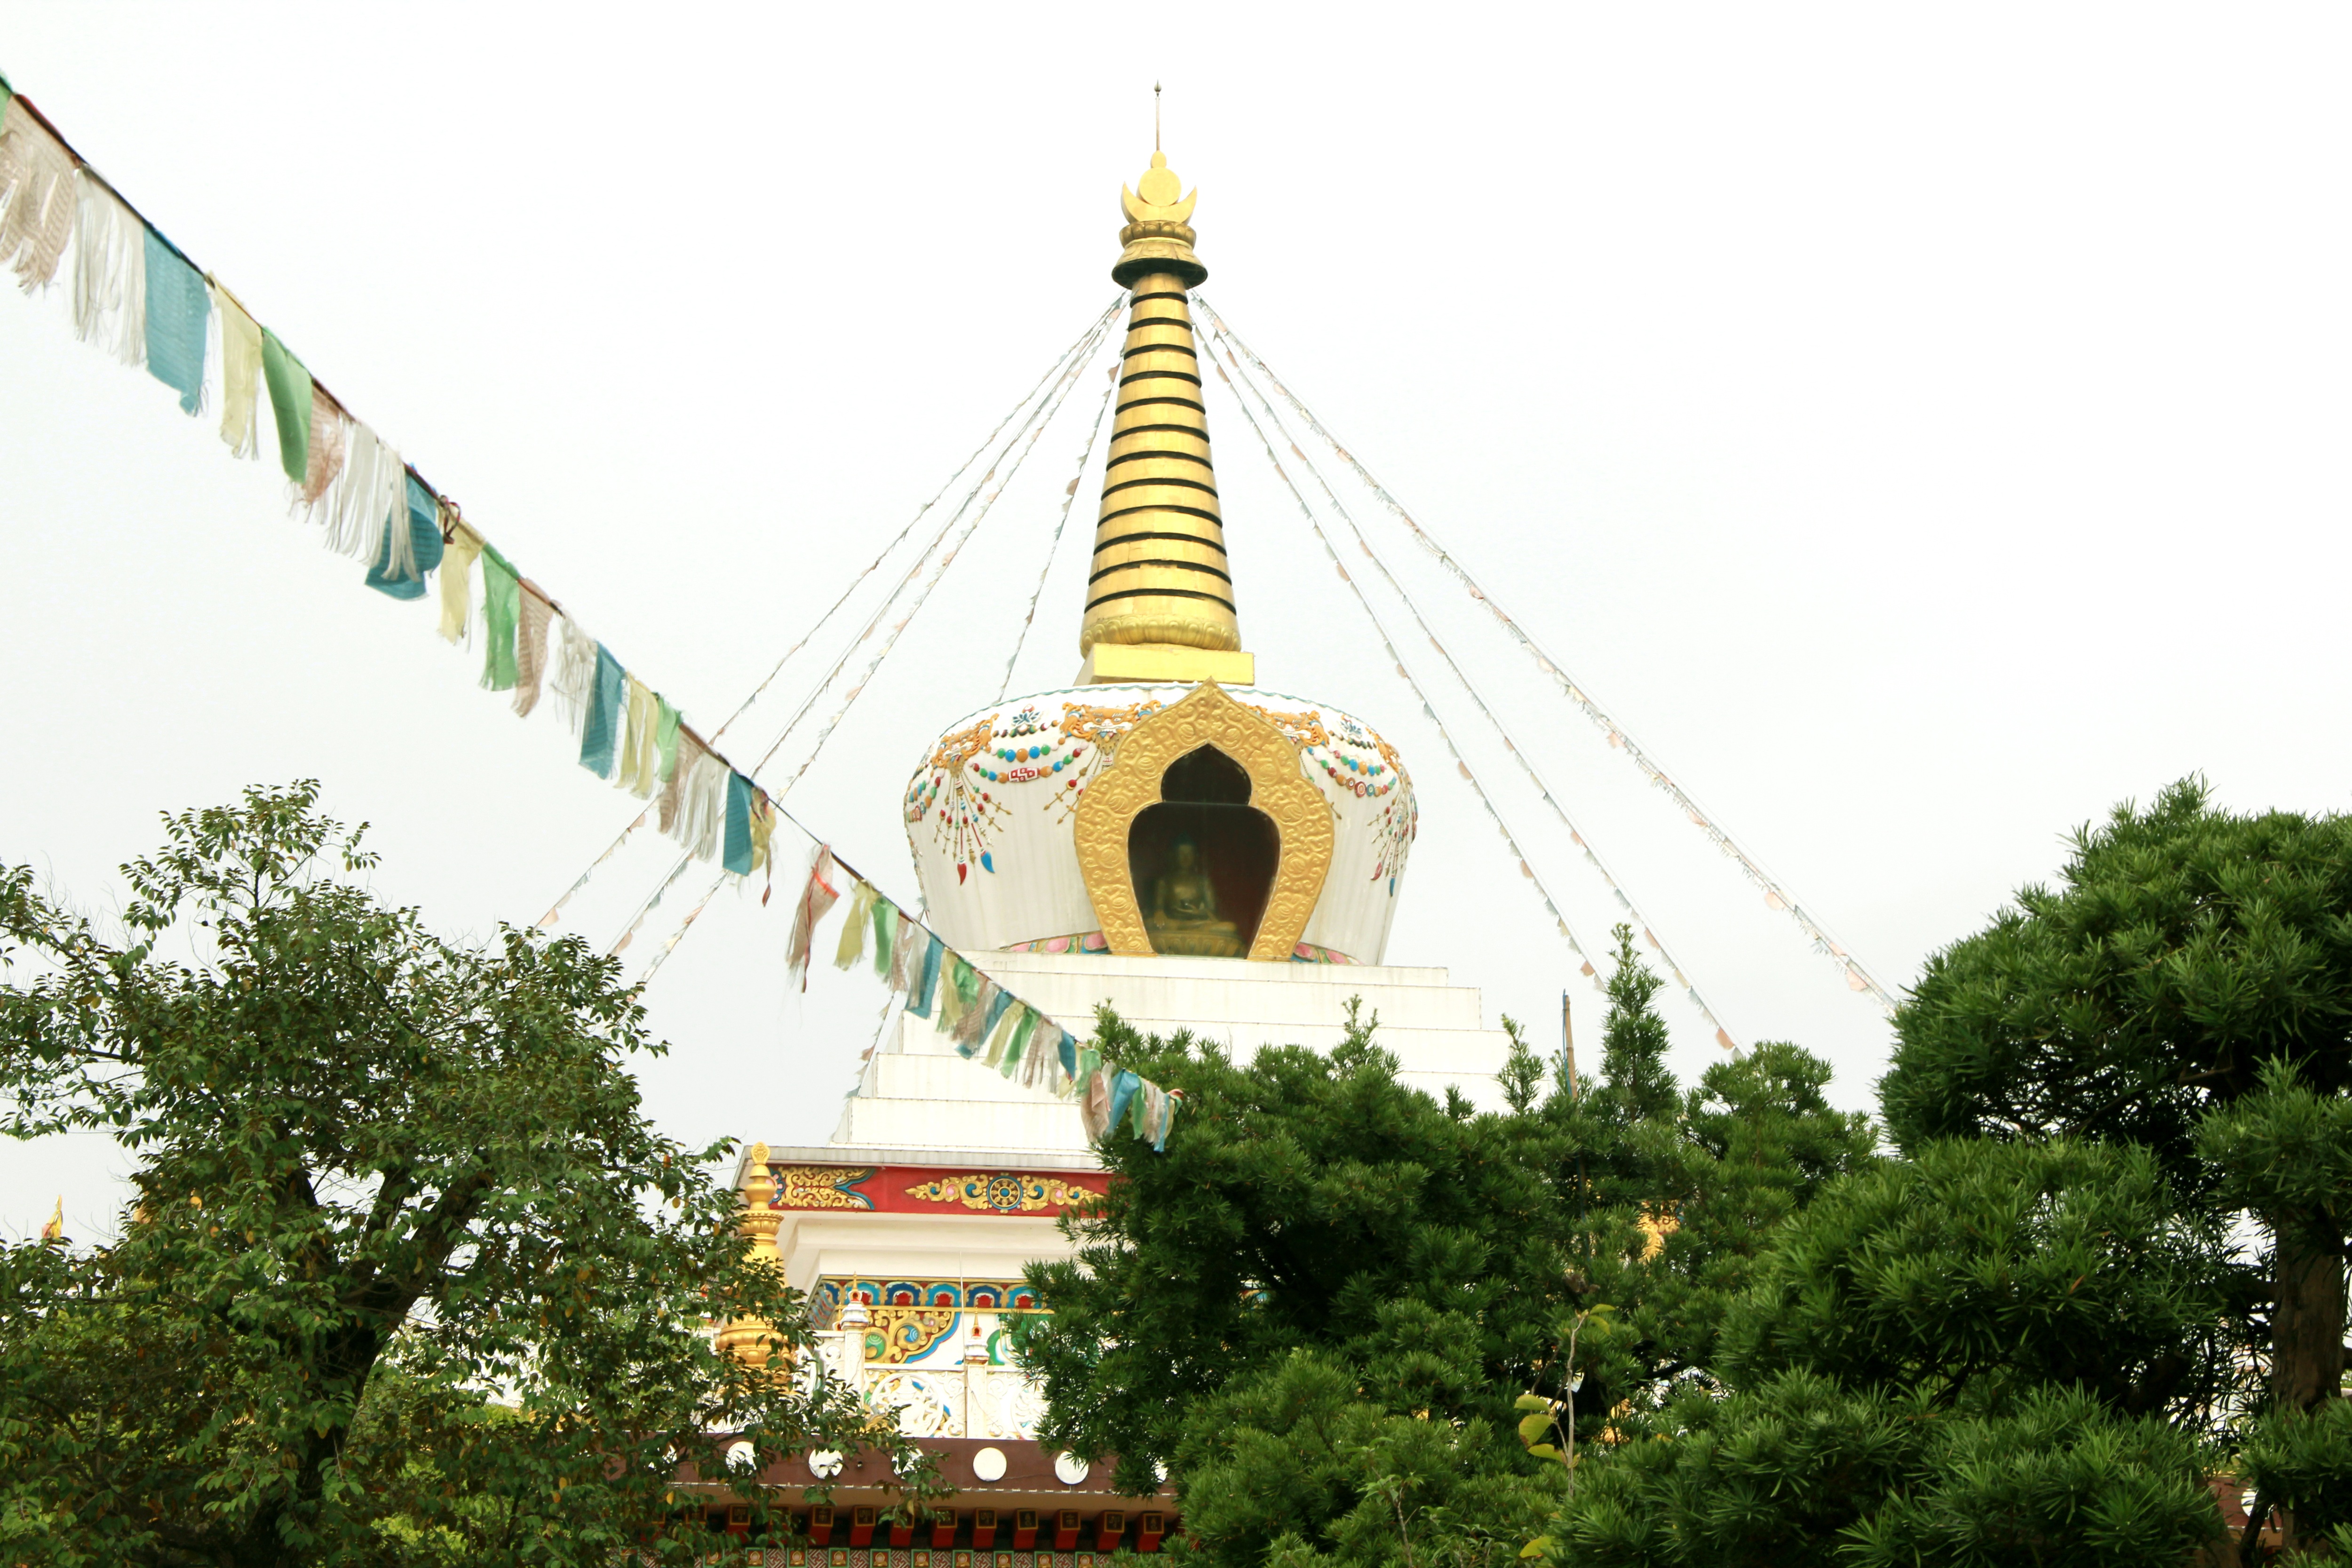 Thưởng thức ngôi chùa với kiến trúc Tây Tạng độc đáo tại Hà Nội - 7